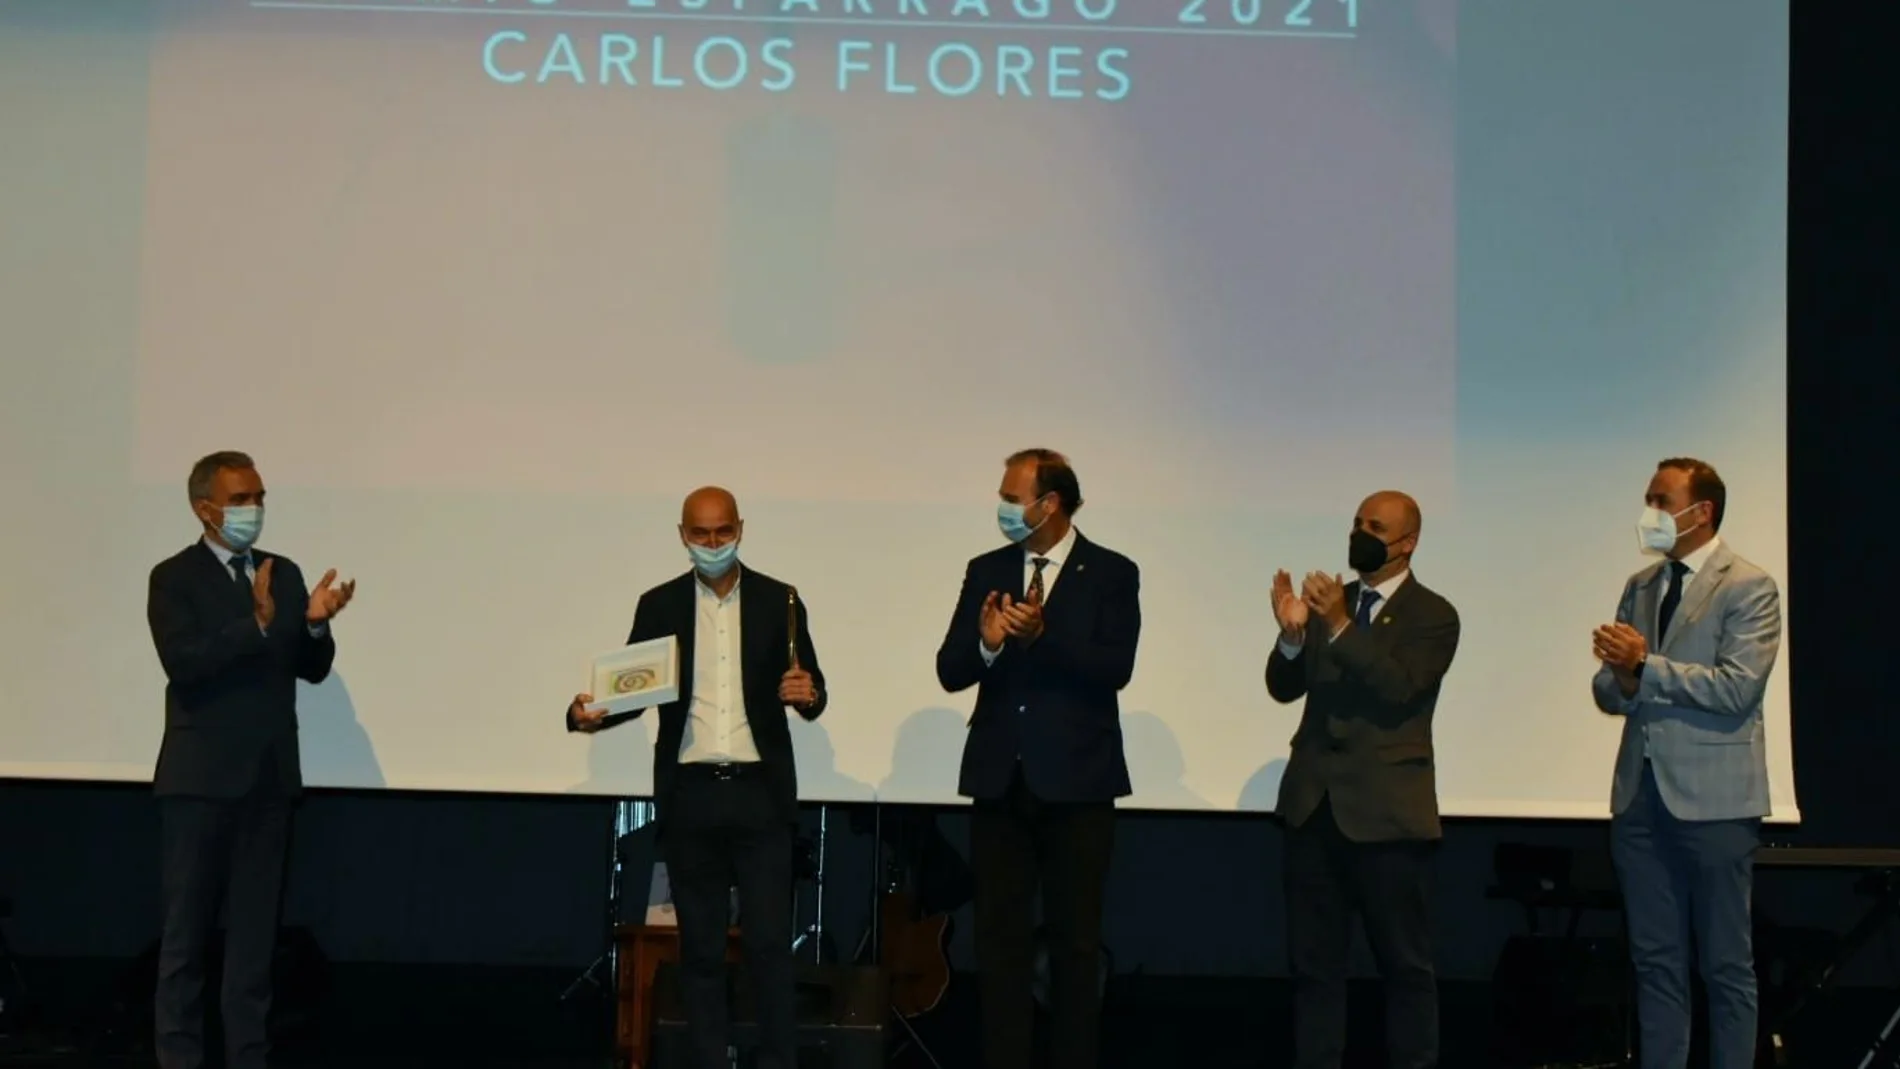 El periodista Carlos Flores recoge el Premio Espárrago, en un acto para poner en valor la importancia de los productos de calidad